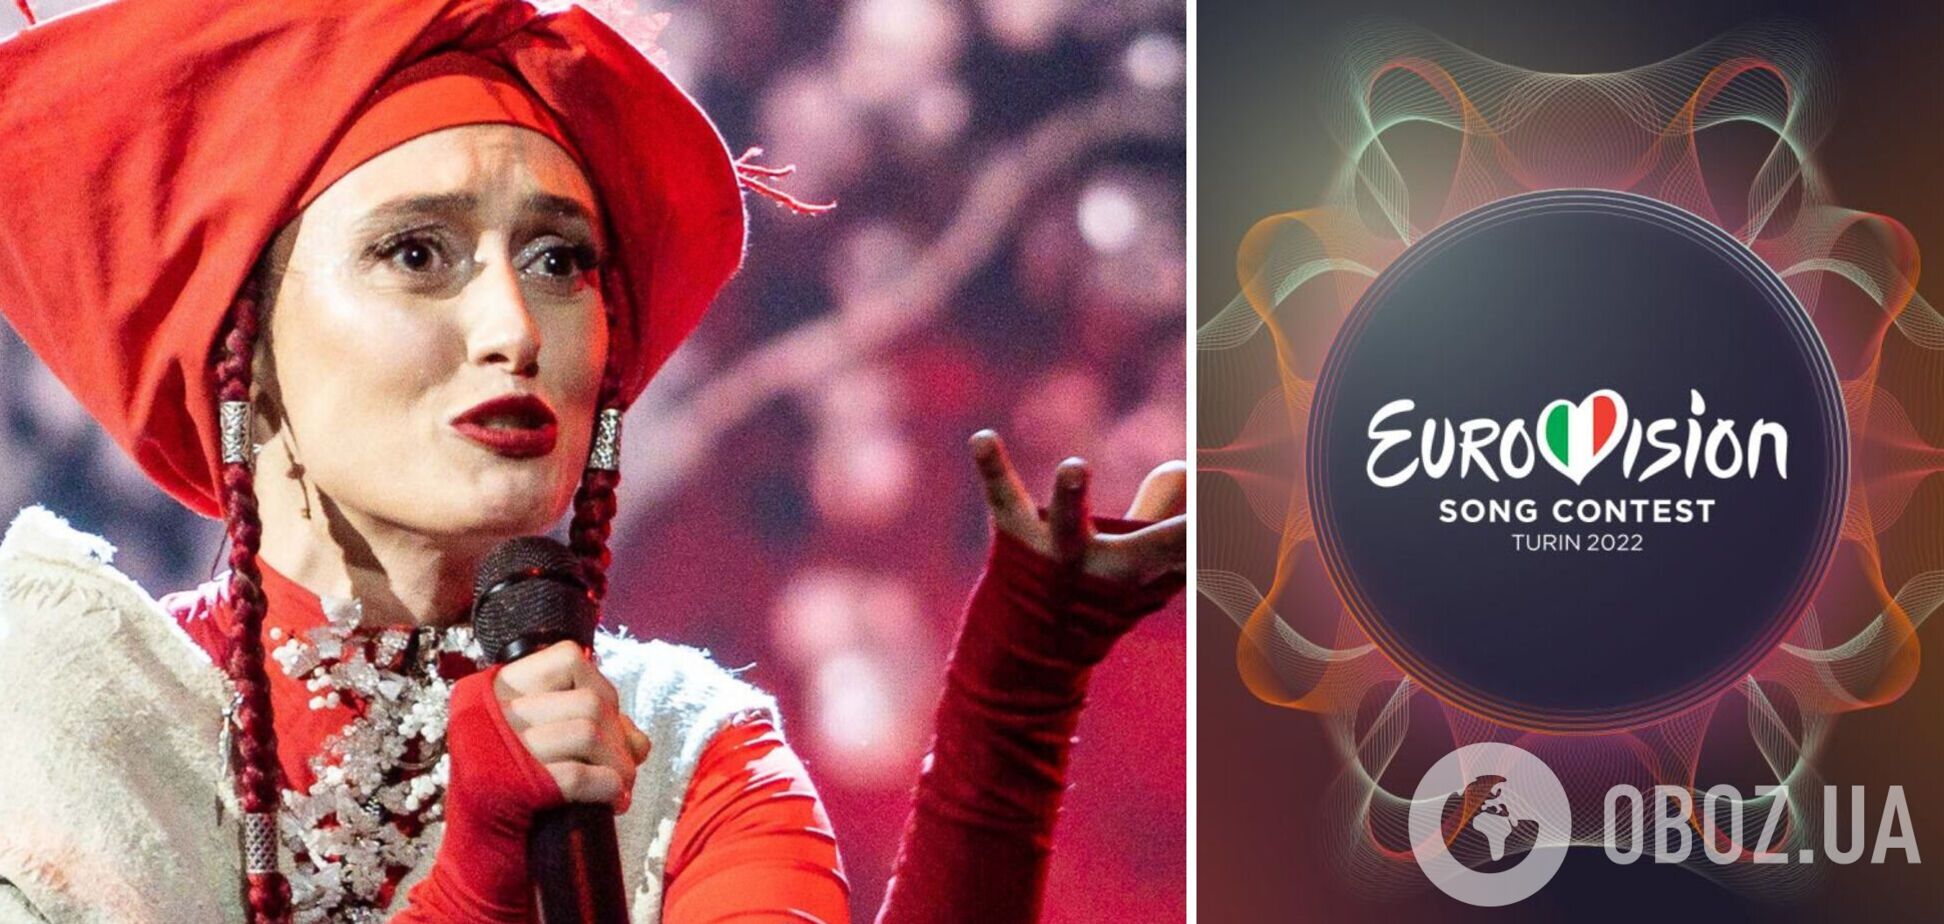 Это Евровидение сглазили, нужно сцену освятить: украинцы отреагировали на отказ Alina Pash от участия в конкурсе